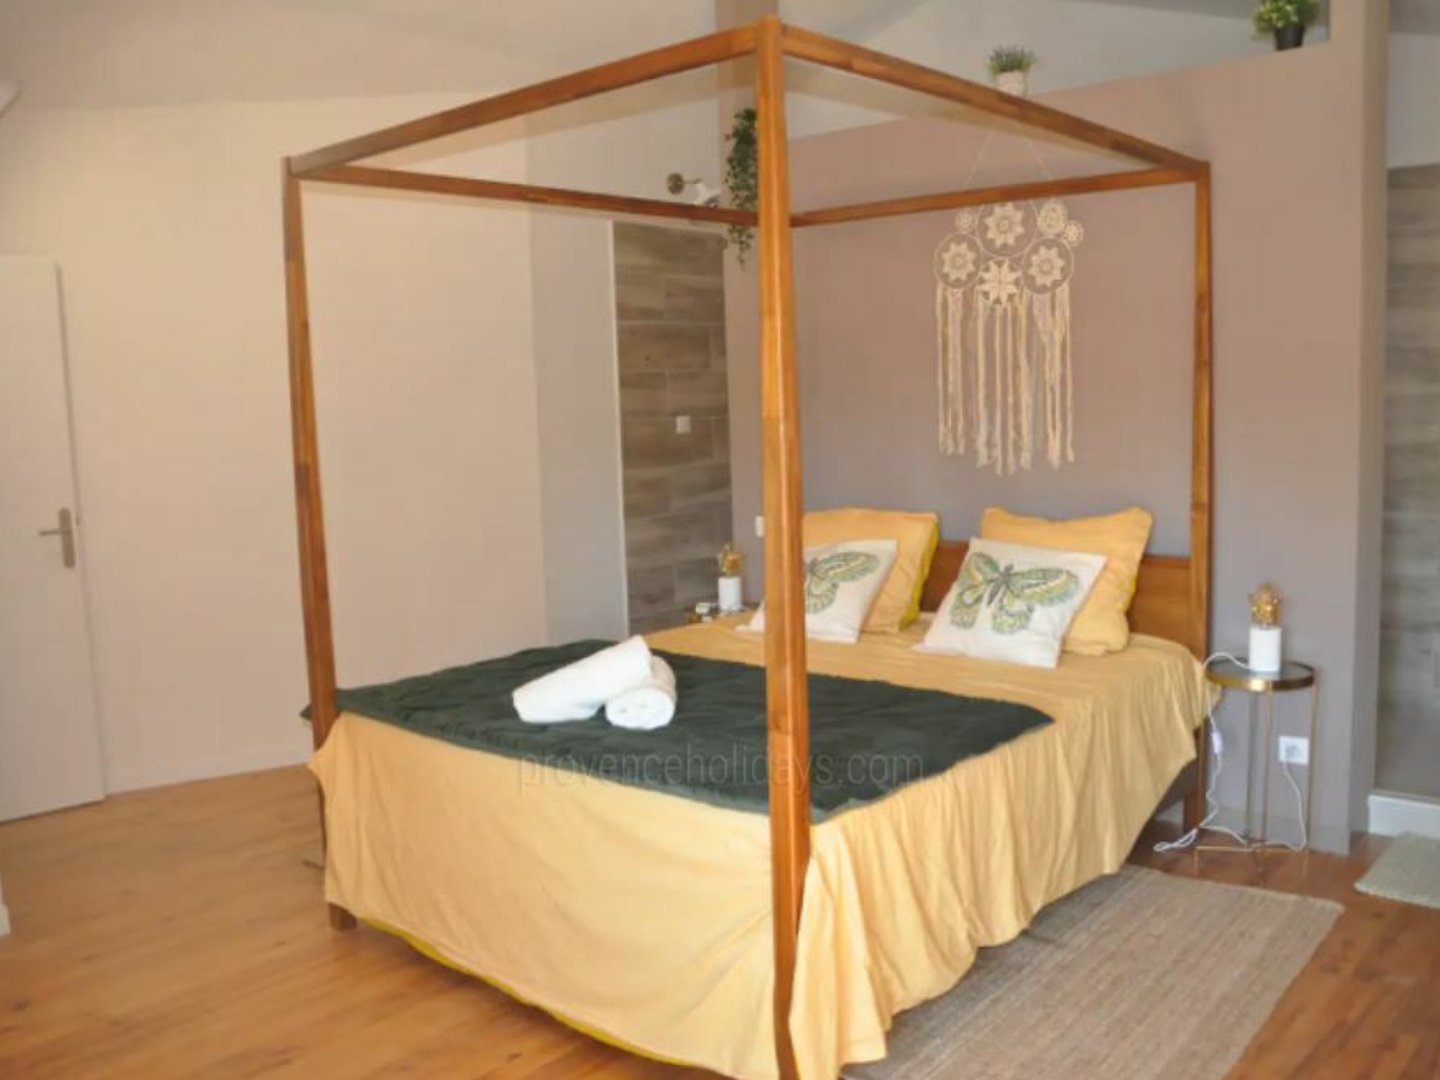 22 - La Manade: Villa: Bedroom